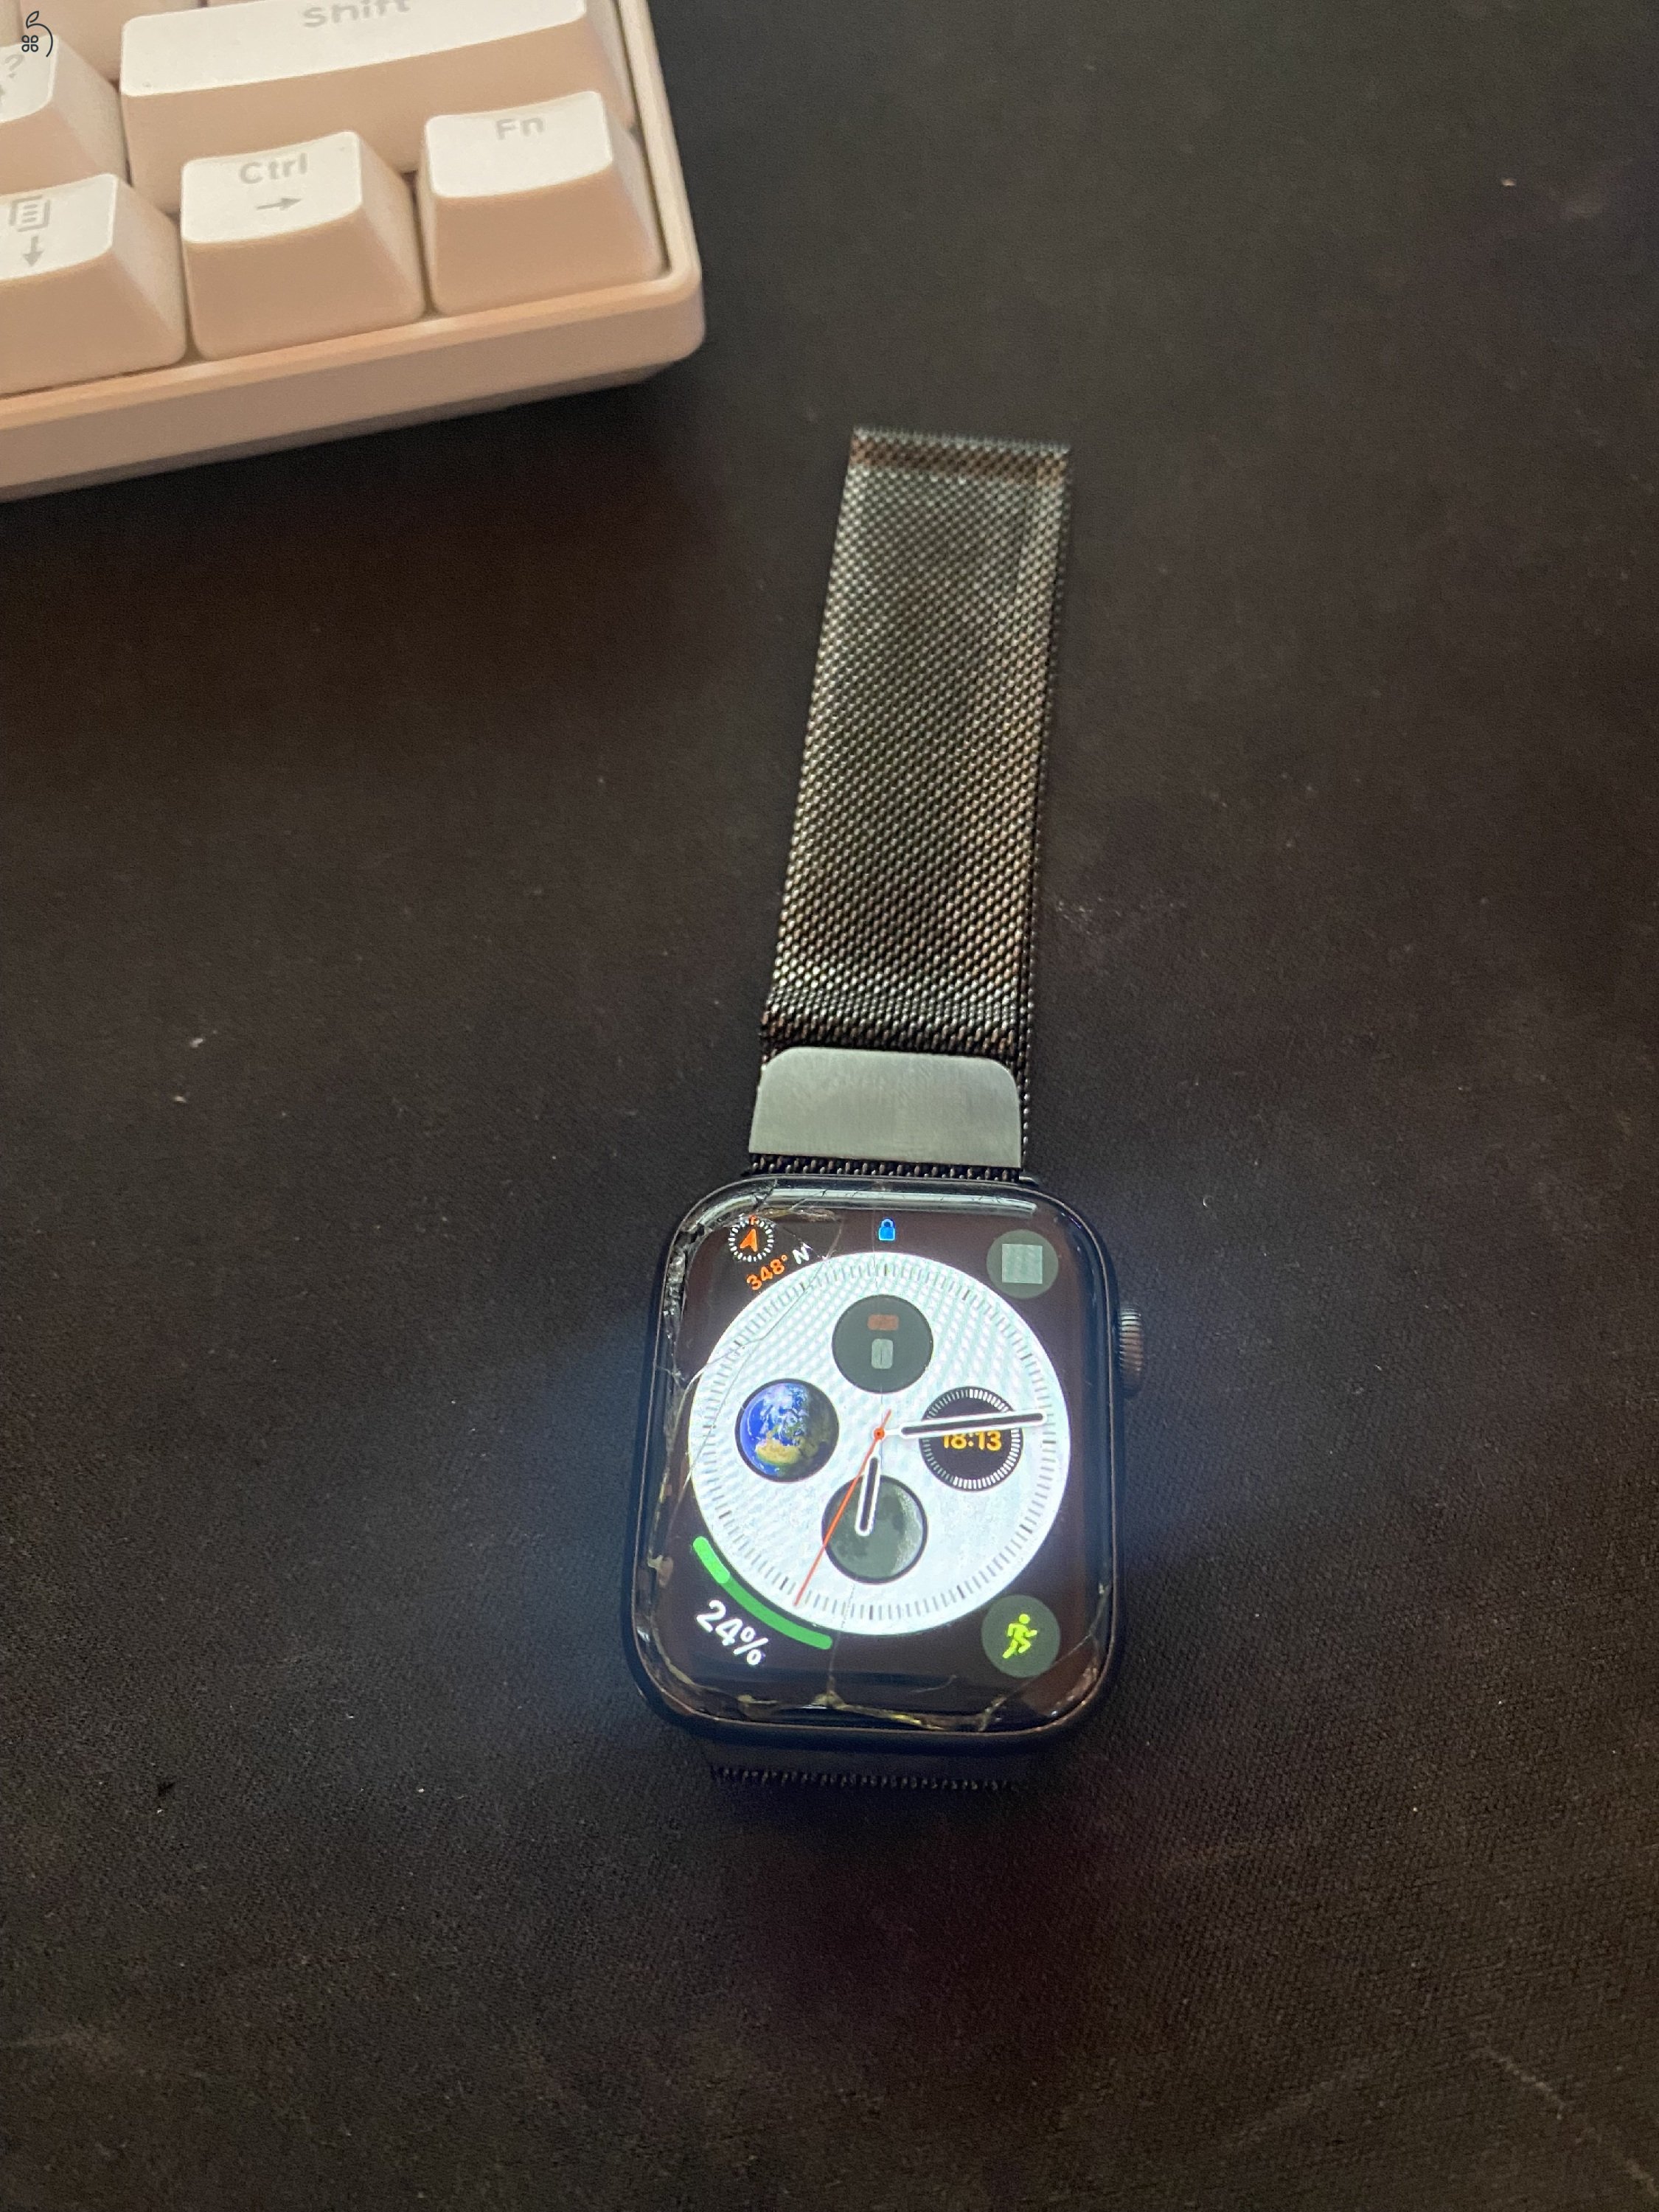 Apple watch s5